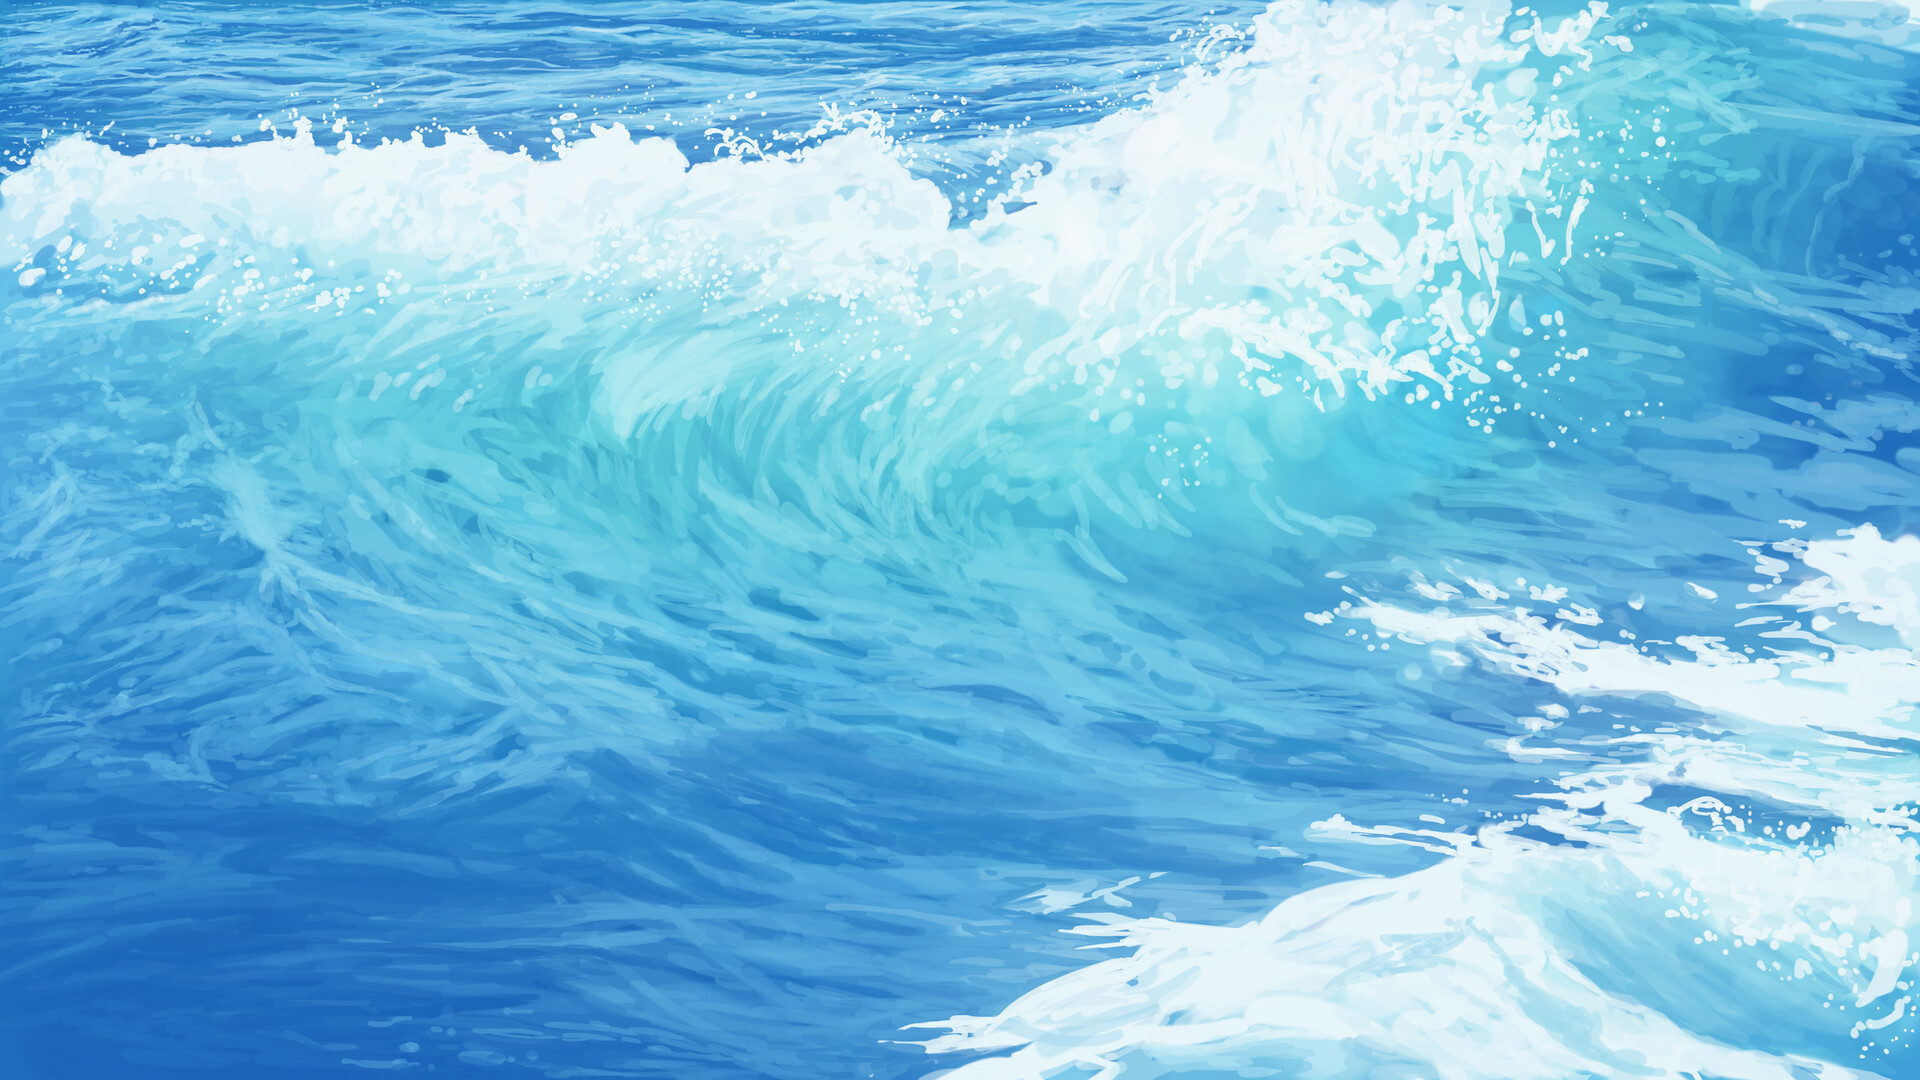 TJ Artist Digital Art Nature Waves Sea 1920x1080